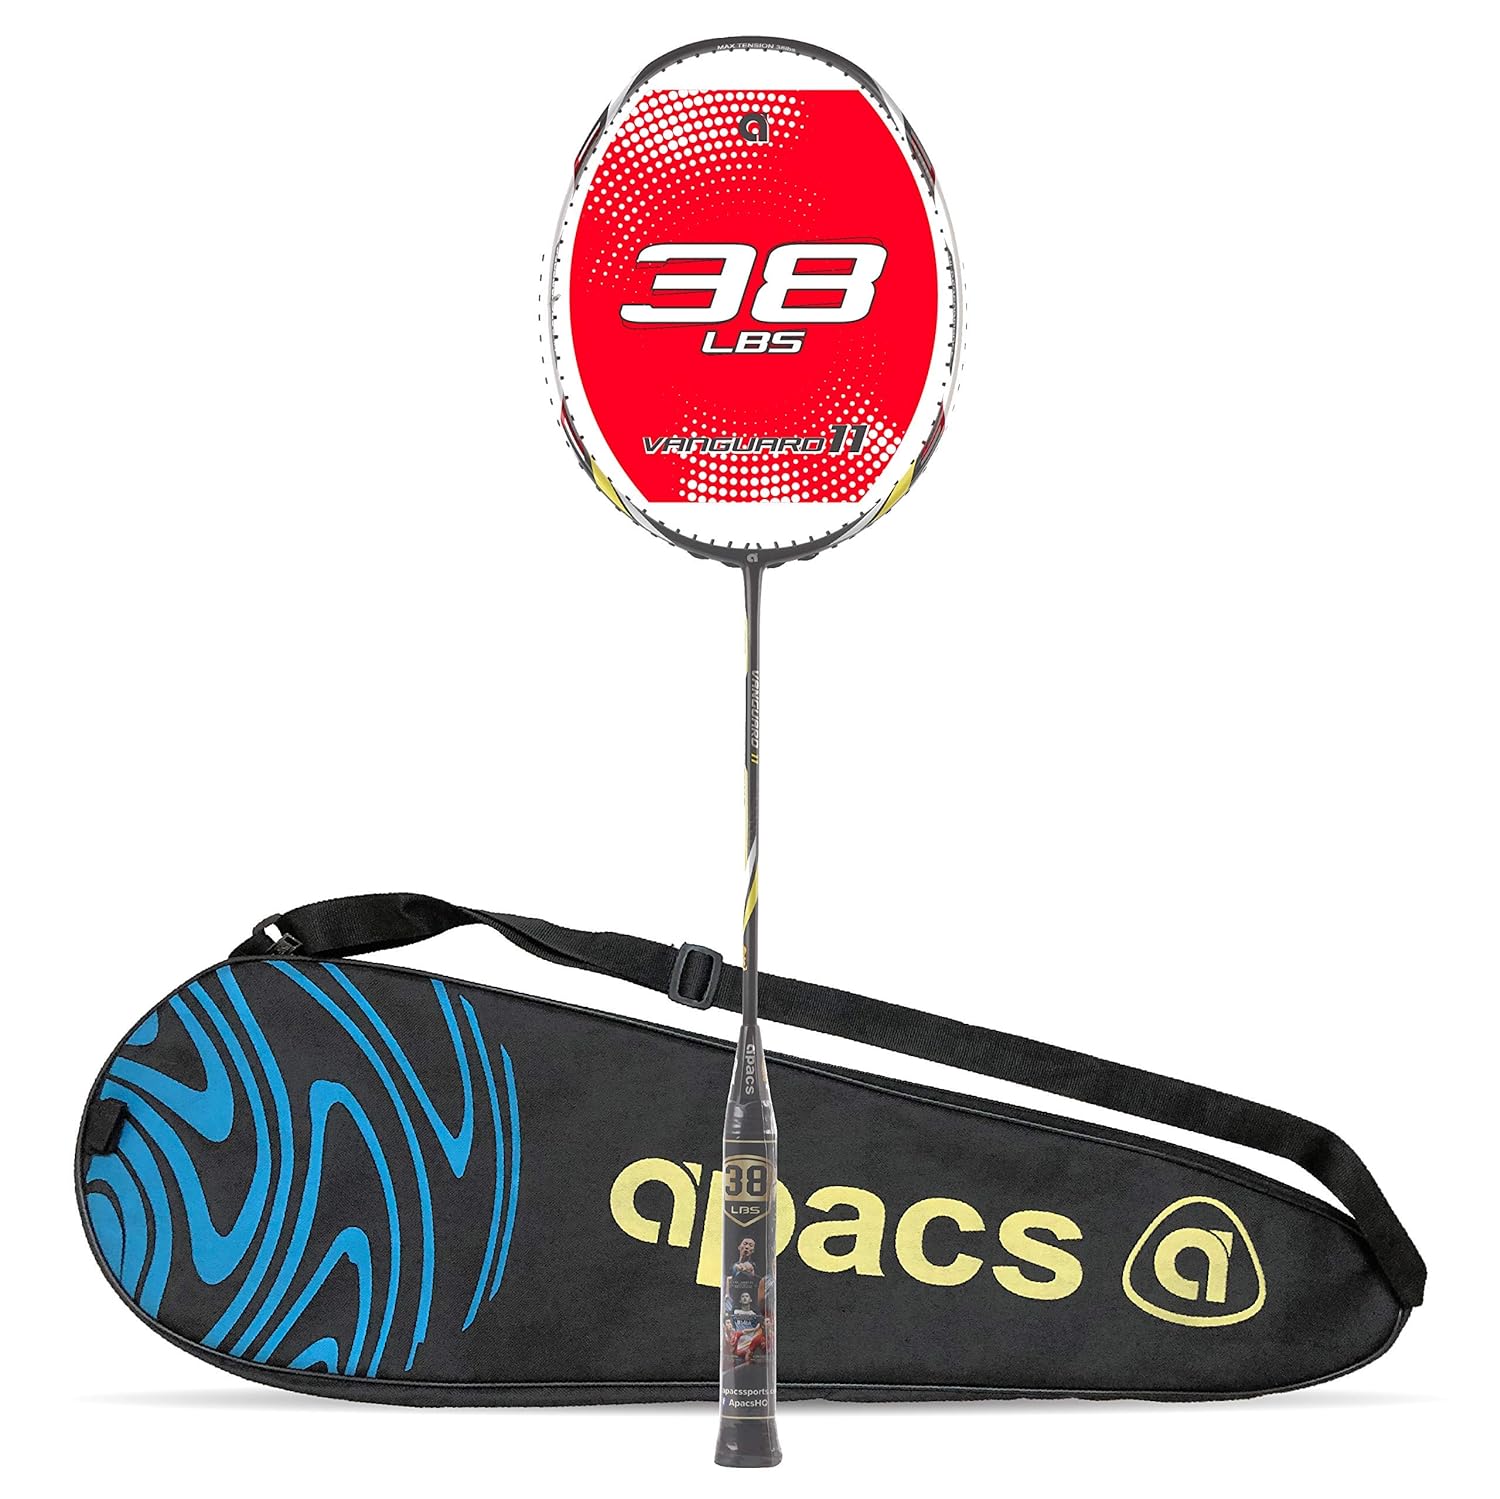 APACS Vanguard 11 Unstrung Badminton Racket